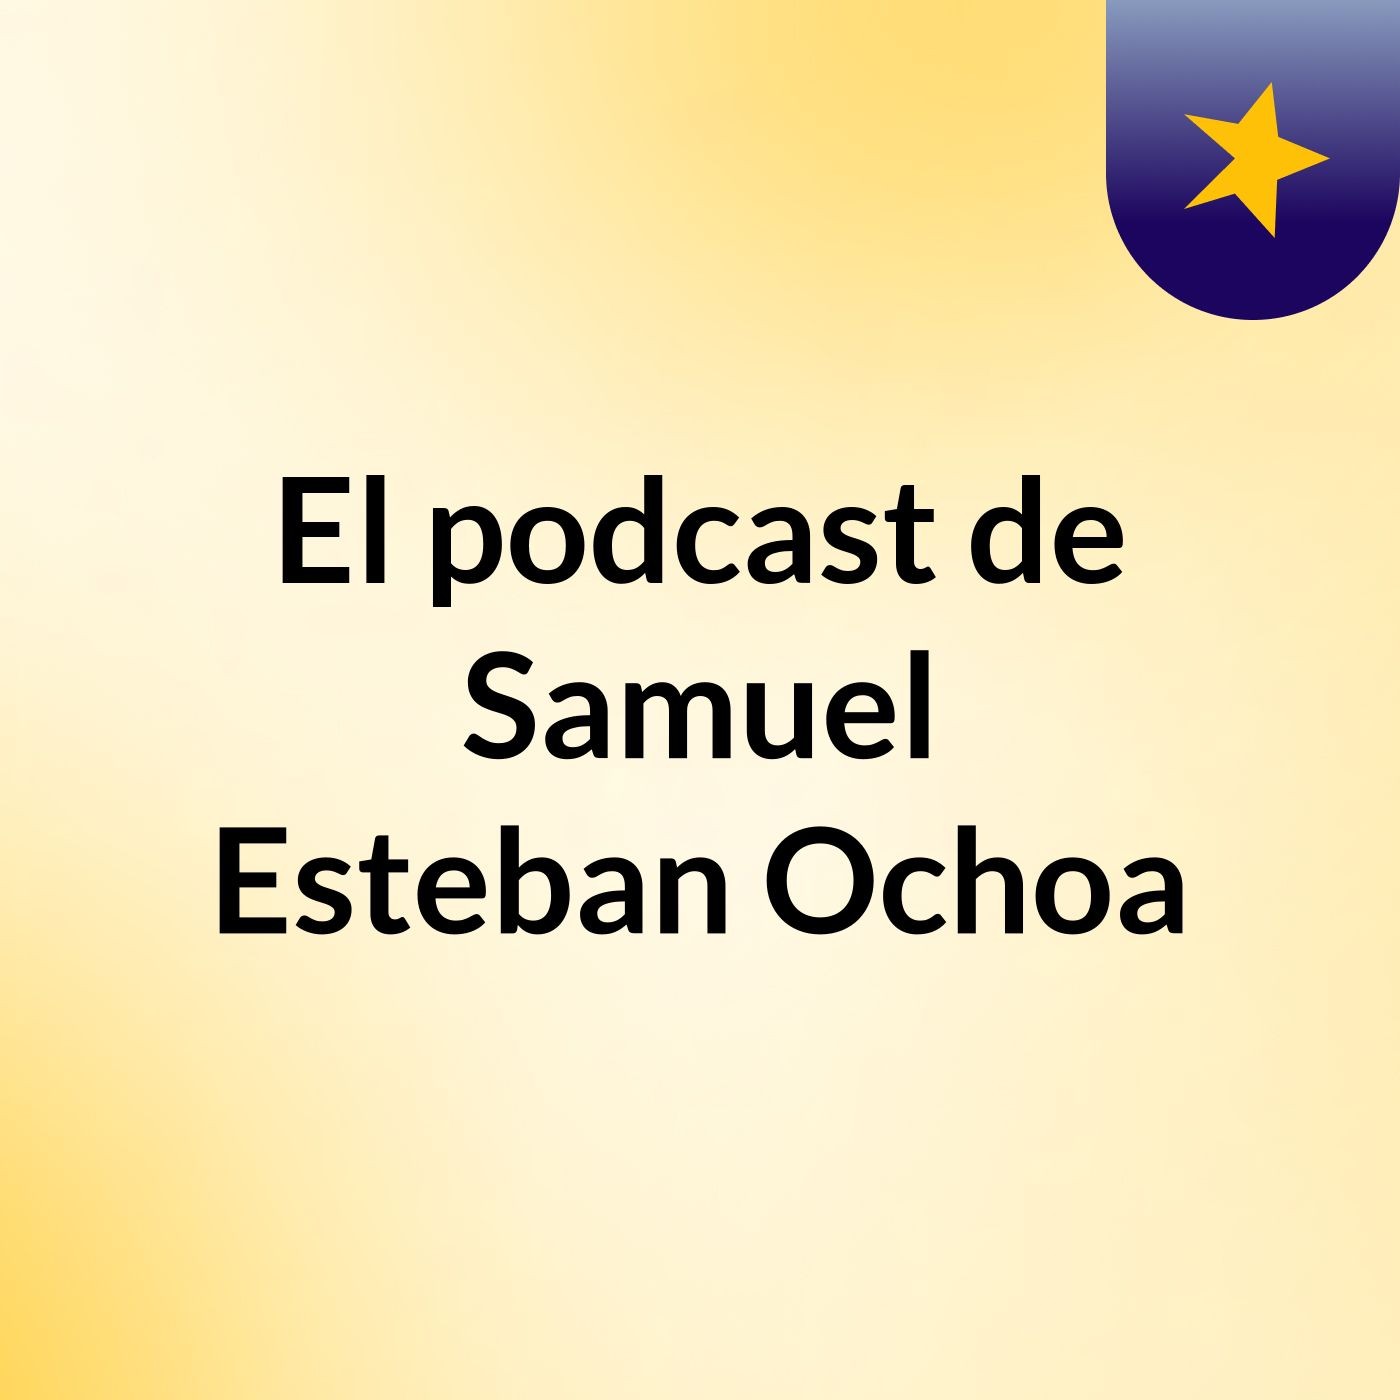 El podcast de Samuel Esteban Ochoa